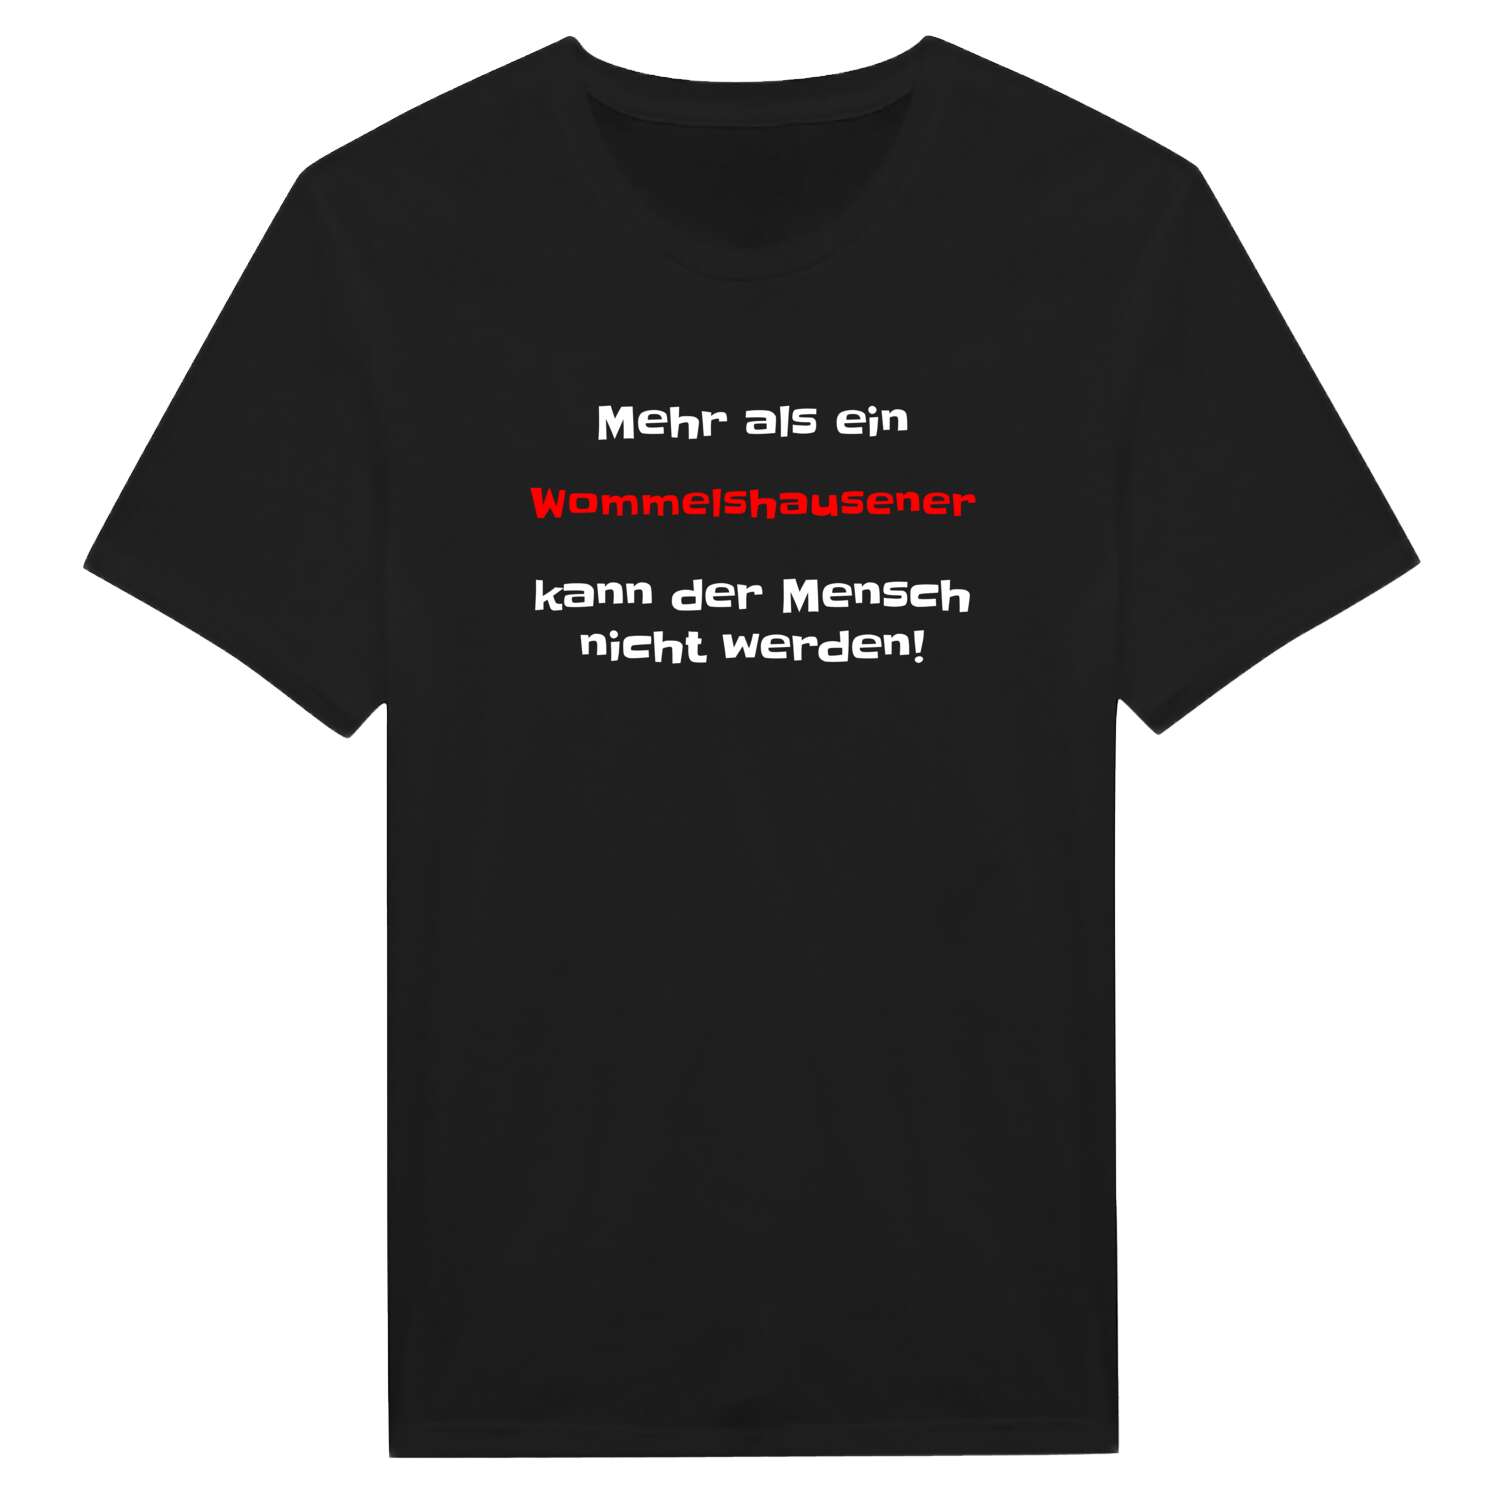 Wommelshausen T-Shirt »Mehr als ein«